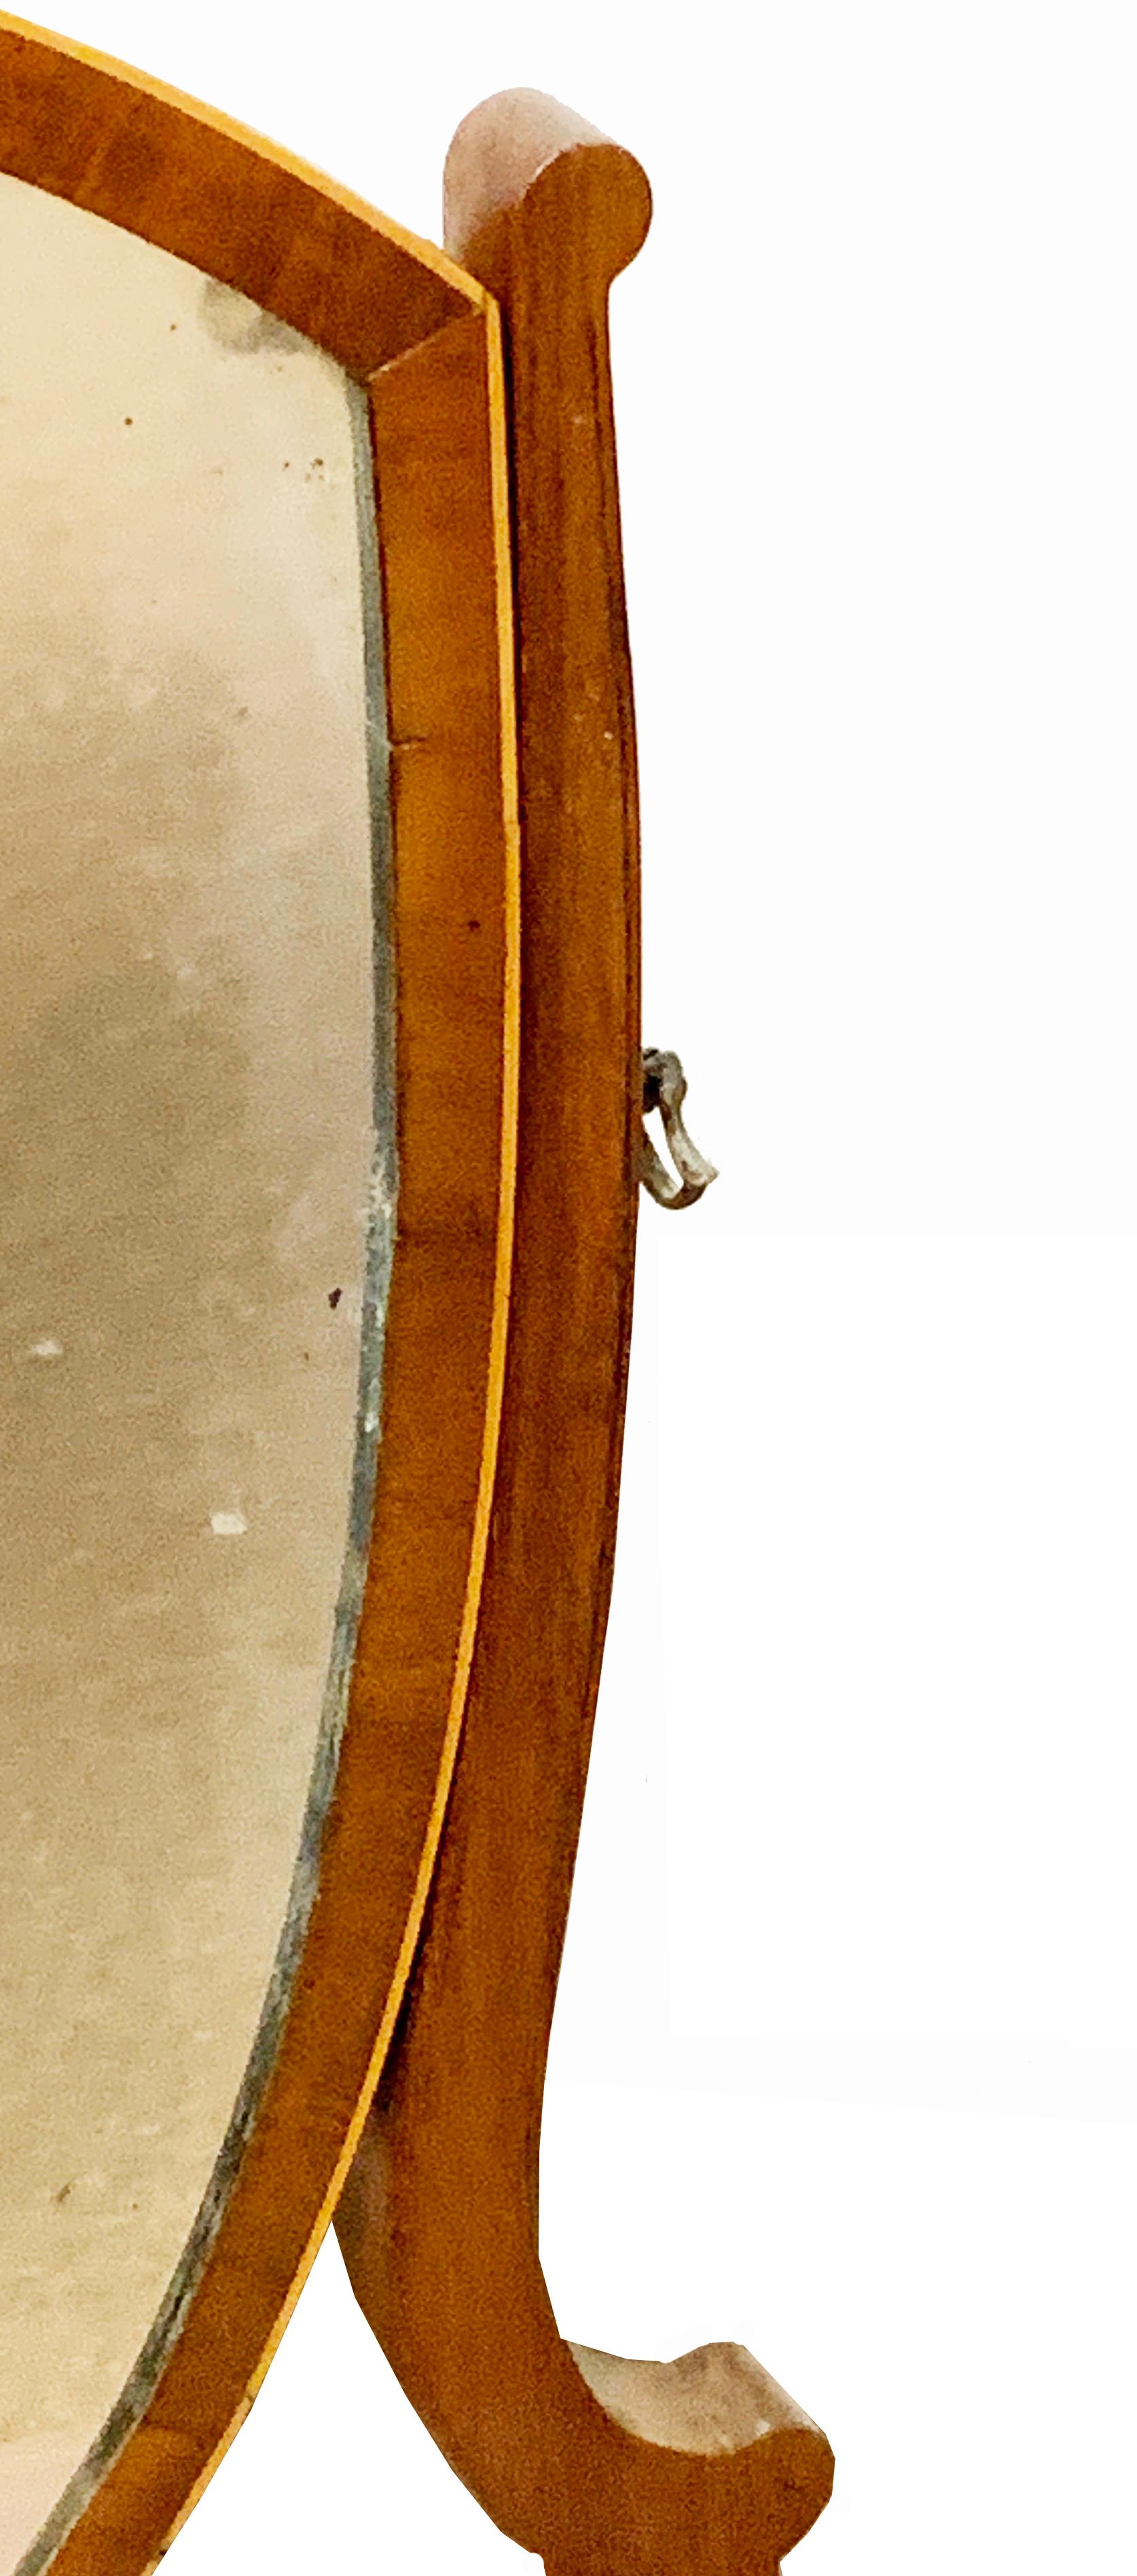 Eine sehr gute Qualität späten 18. Jahrhundert Mahagoni Dressing
Tischspiegel mit schildförmiger Platte über dem Brunnen abgebildet
Sockel mit drei Fries-Schubladen und eleganter
aufgereihte Dekoration

(Schminktischspiegel, oft auch als